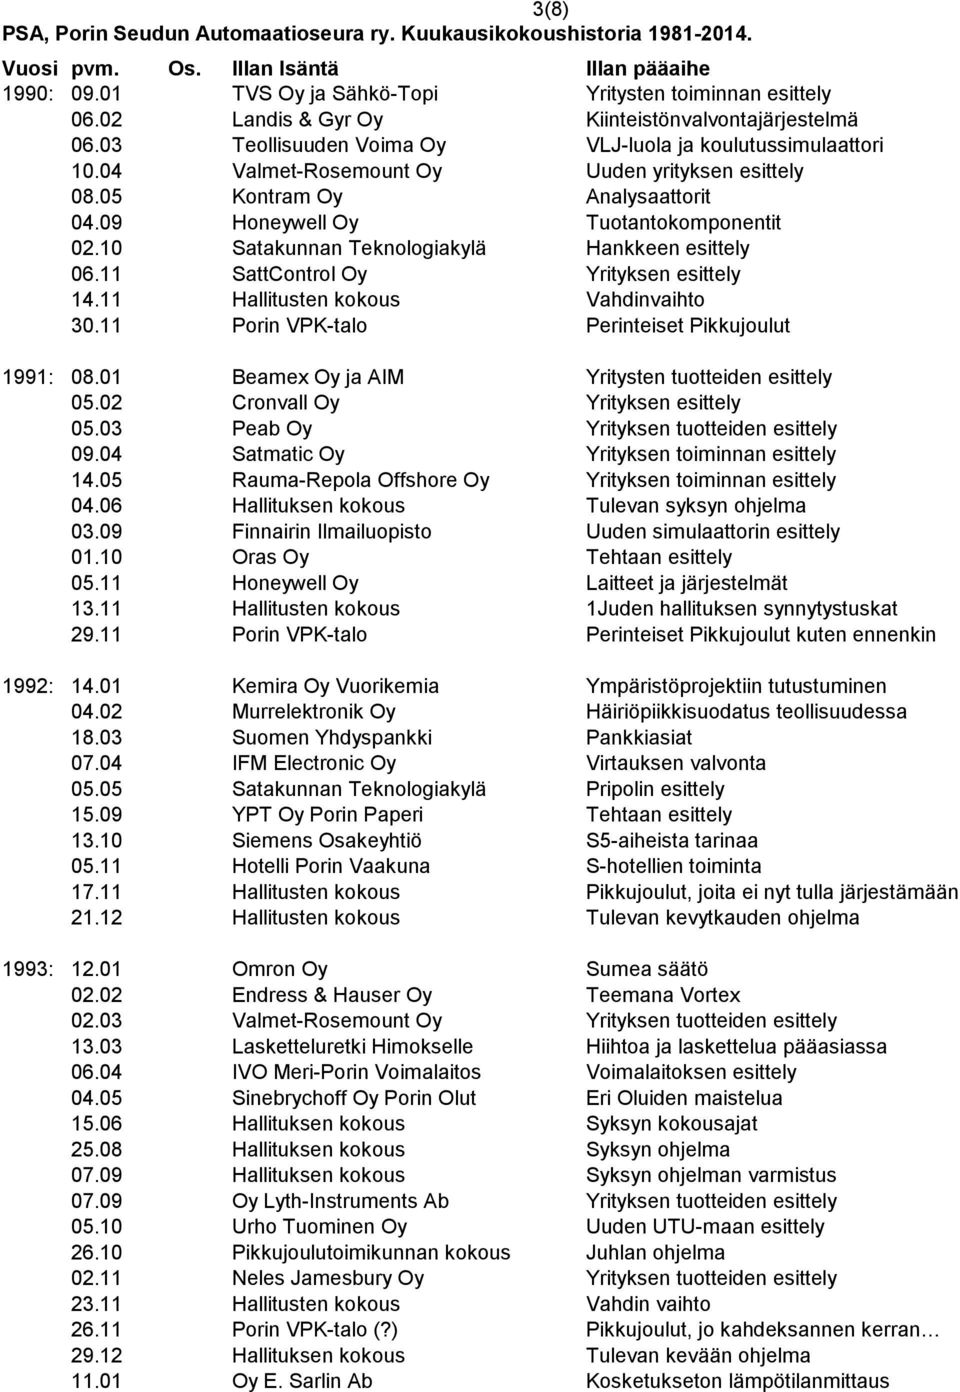 11 SattControl Oy Yrityksen esittely 14.11 Hallitusten kokous Vahdinvaihto 30.11 Porin VPK-talo Perinteiset Pikkujoulut 1991: 08.01 Beamex Oy ja AIM Yritysten tuotteiden esittely 05.